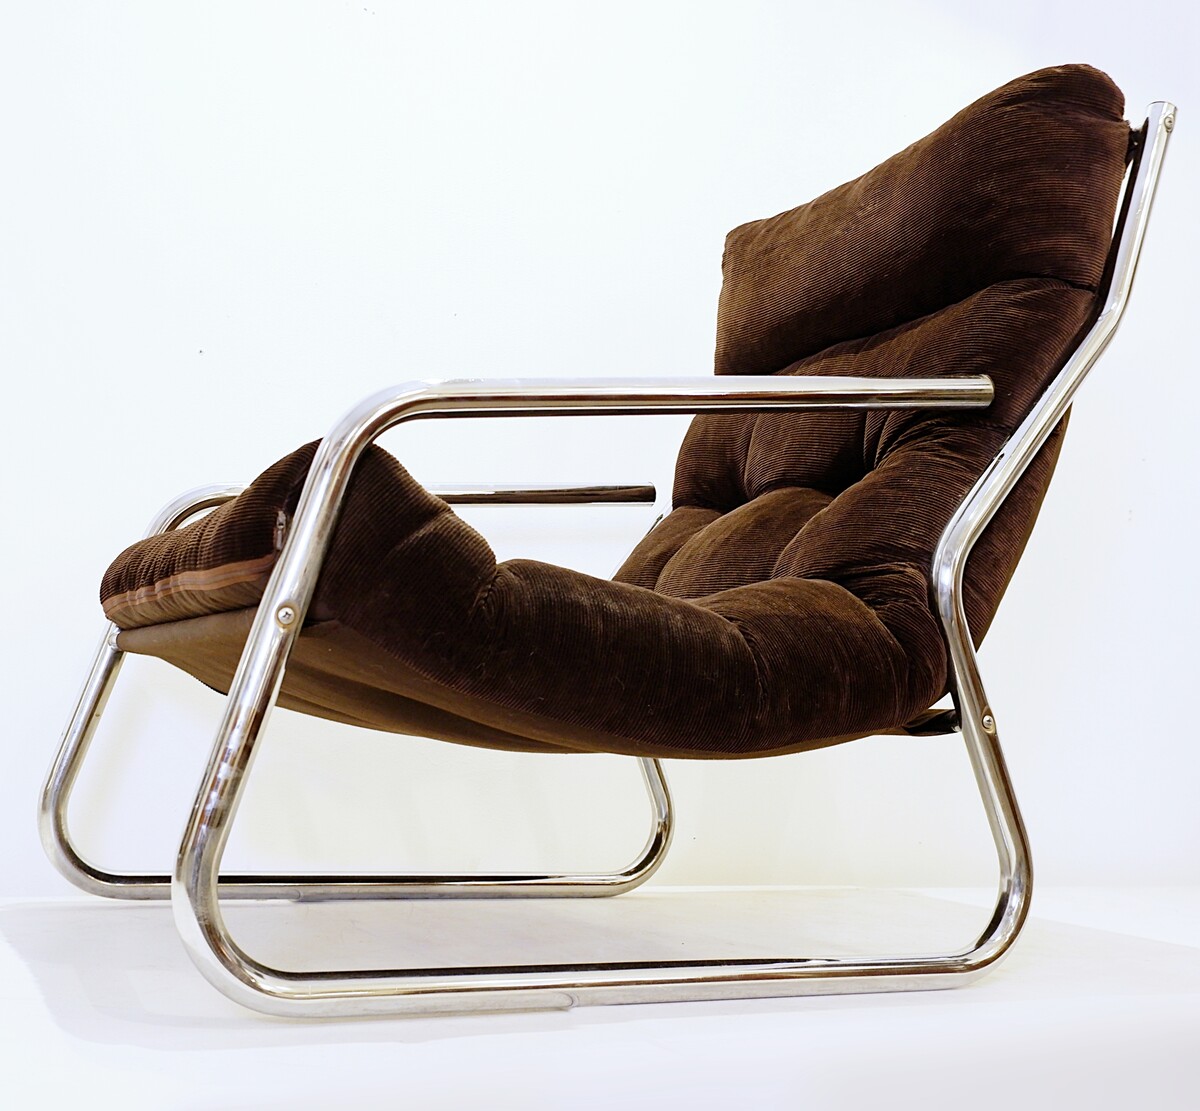 Mid-century pair of tubular chrome armchairs by Gillis Lundgren for Ikea , 1970s - original Brown velvet